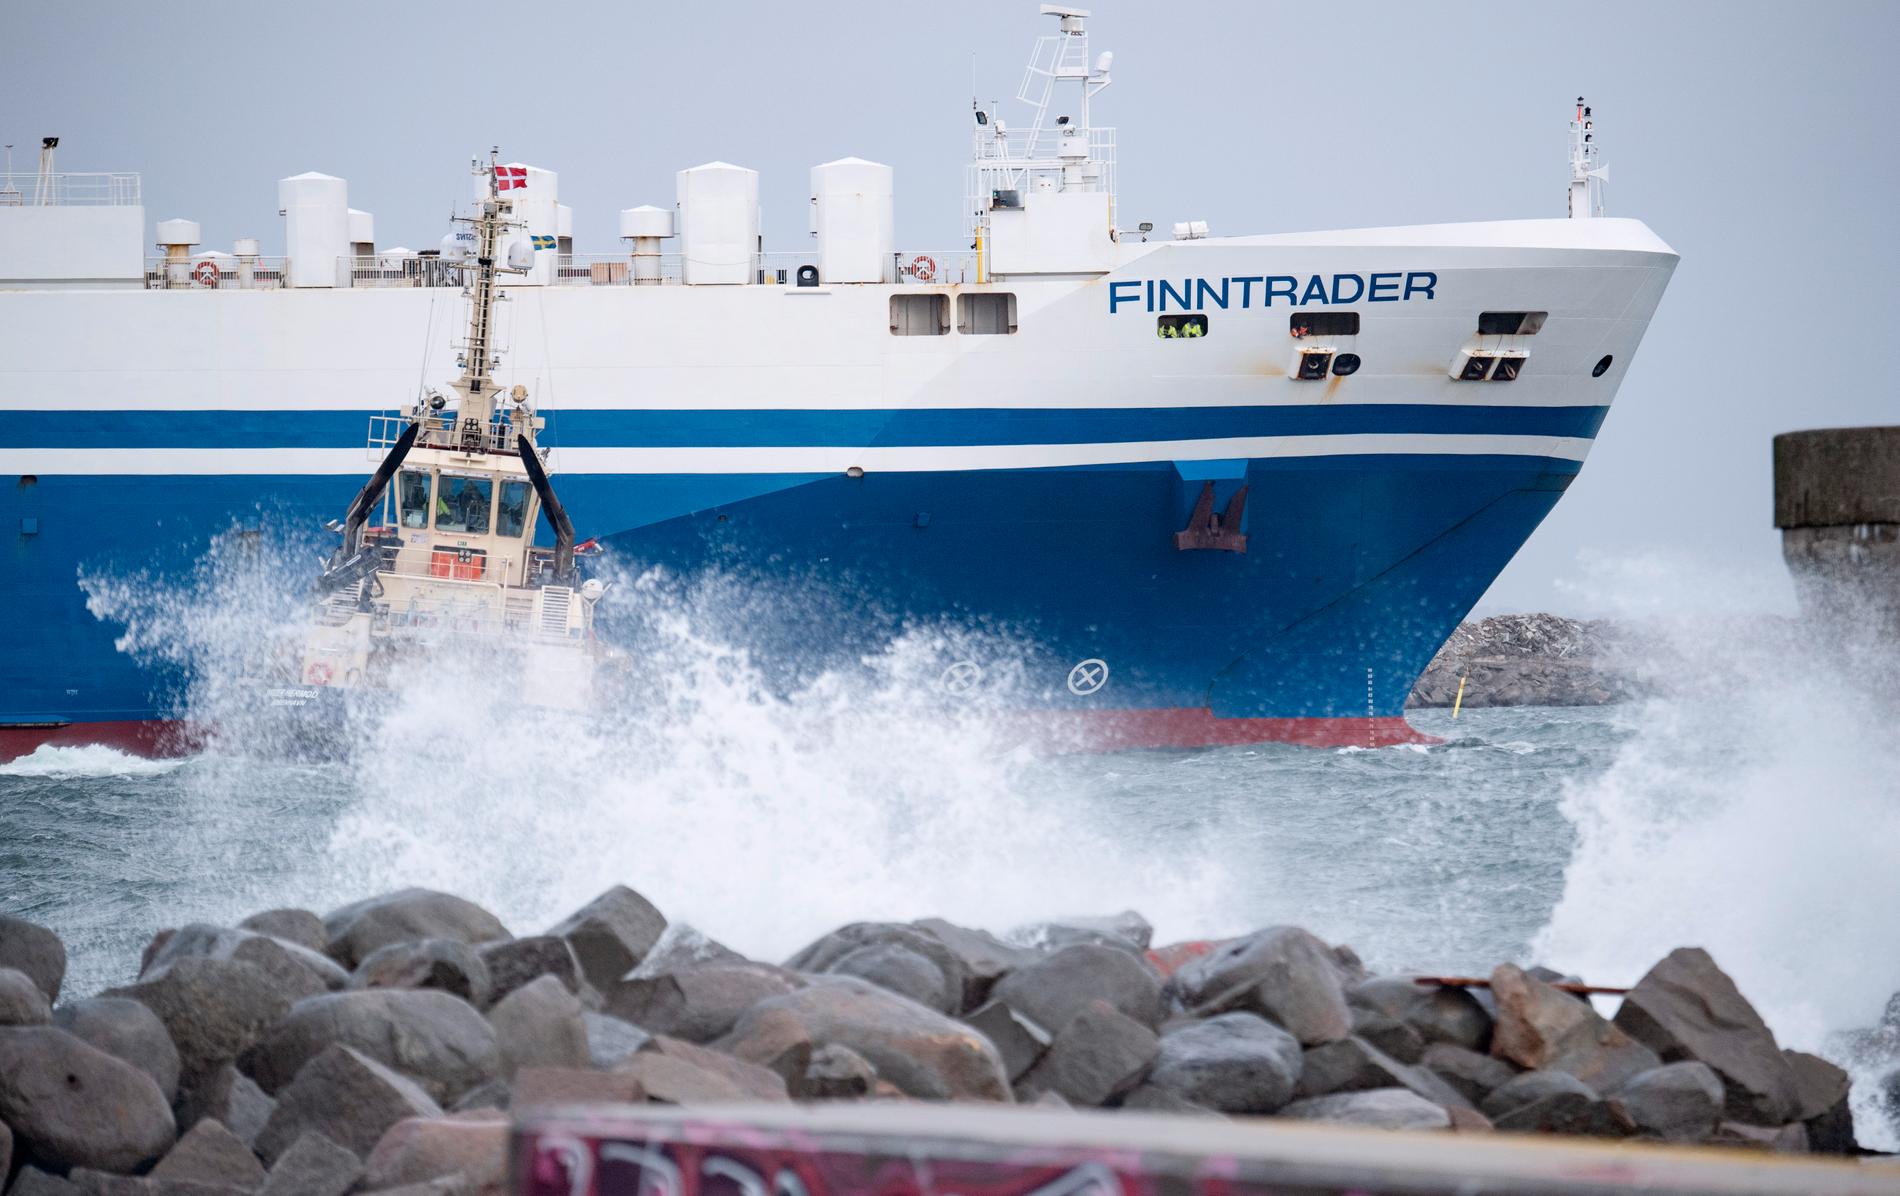 Tysklandsfärjan Finntrader får assistans av bogserbåt för att ta sig in till kaj i hamnen i Malmö.